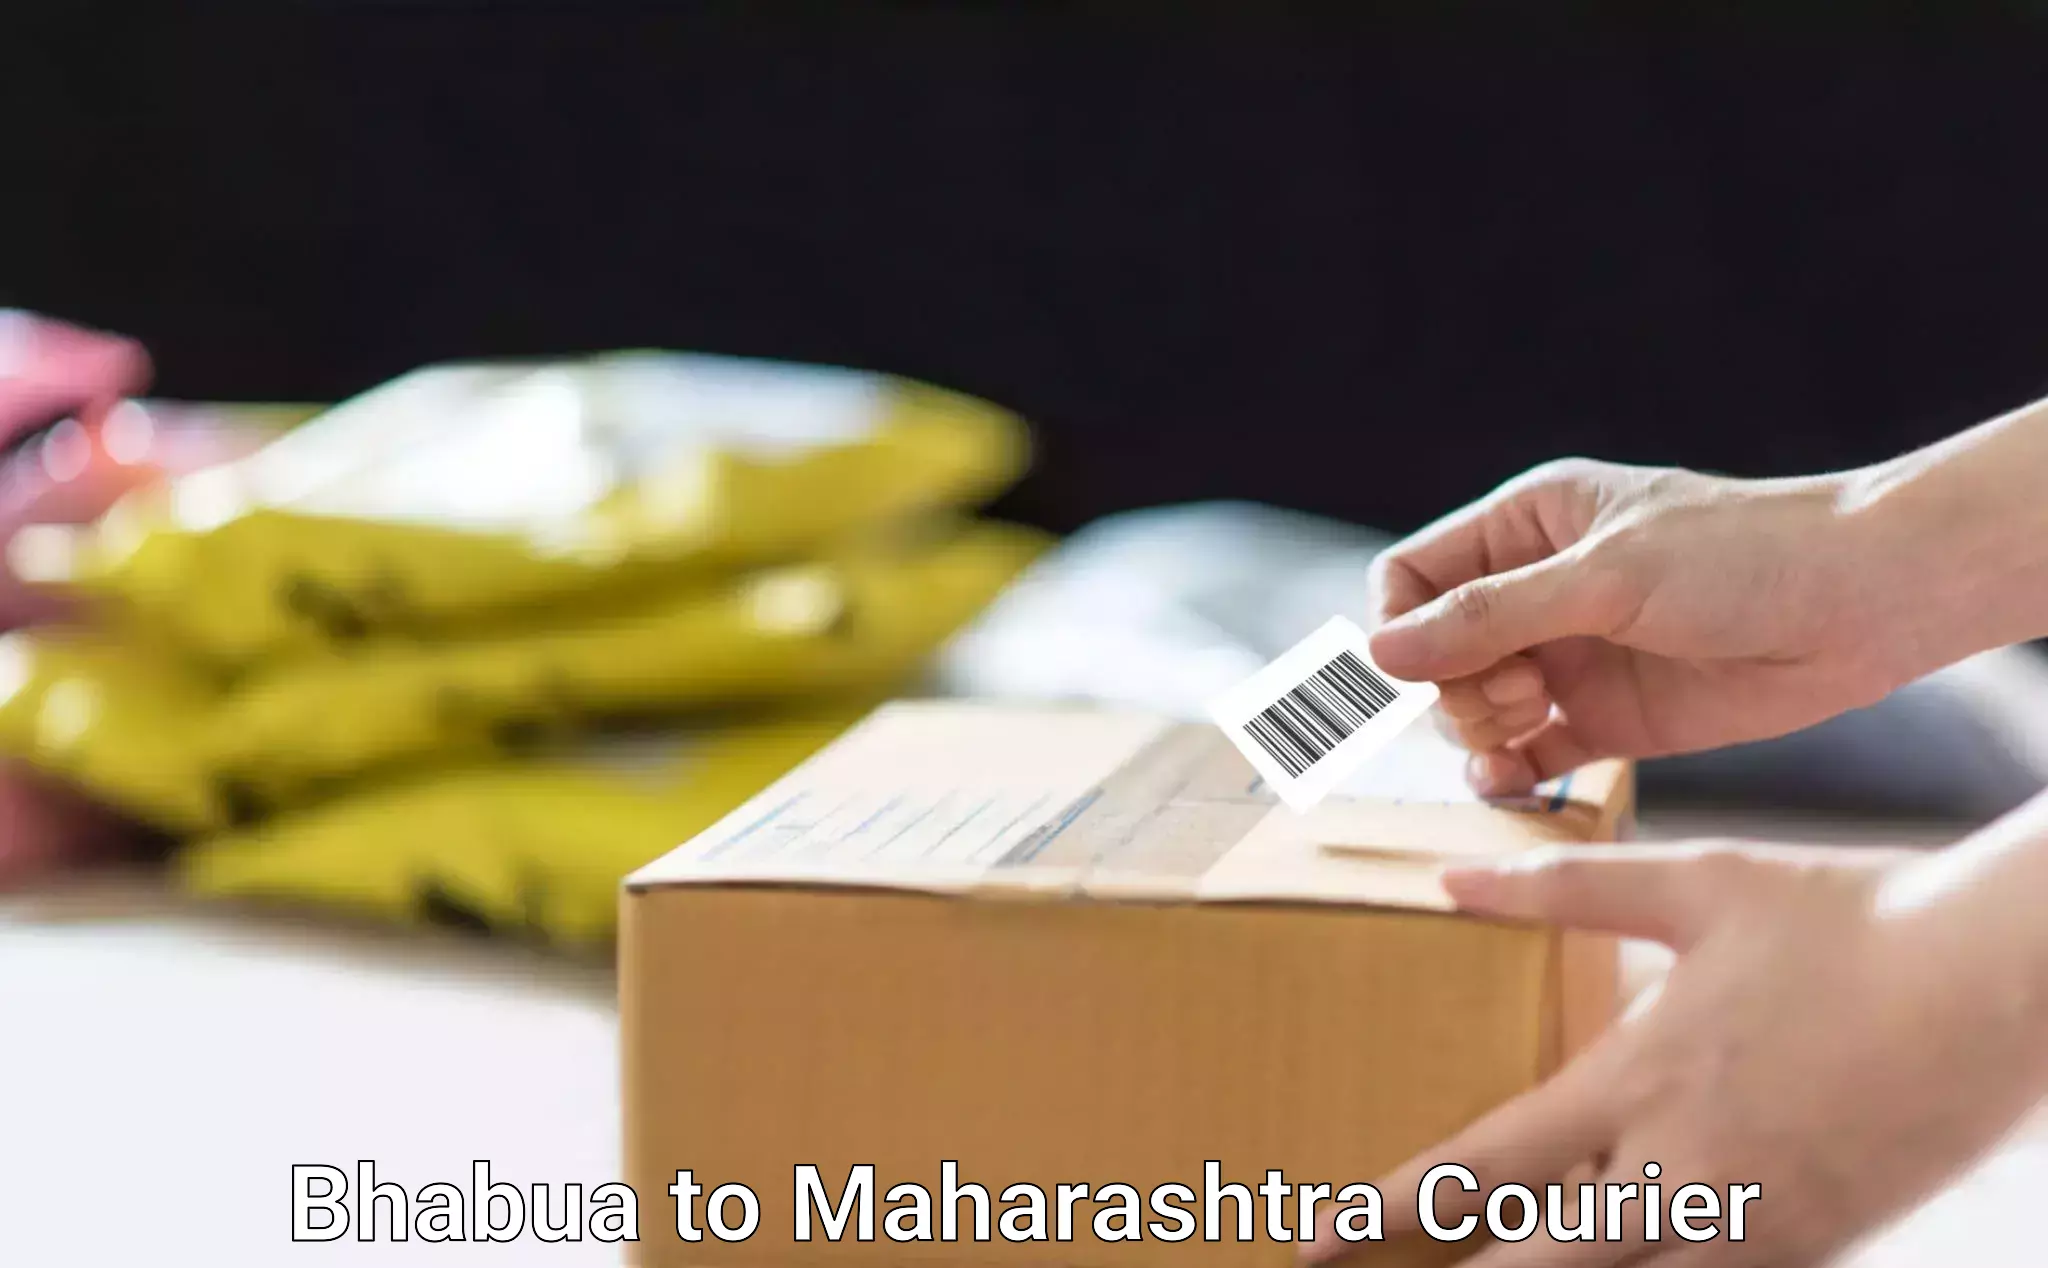 Full-service movers in Bhabua to Maharashtra